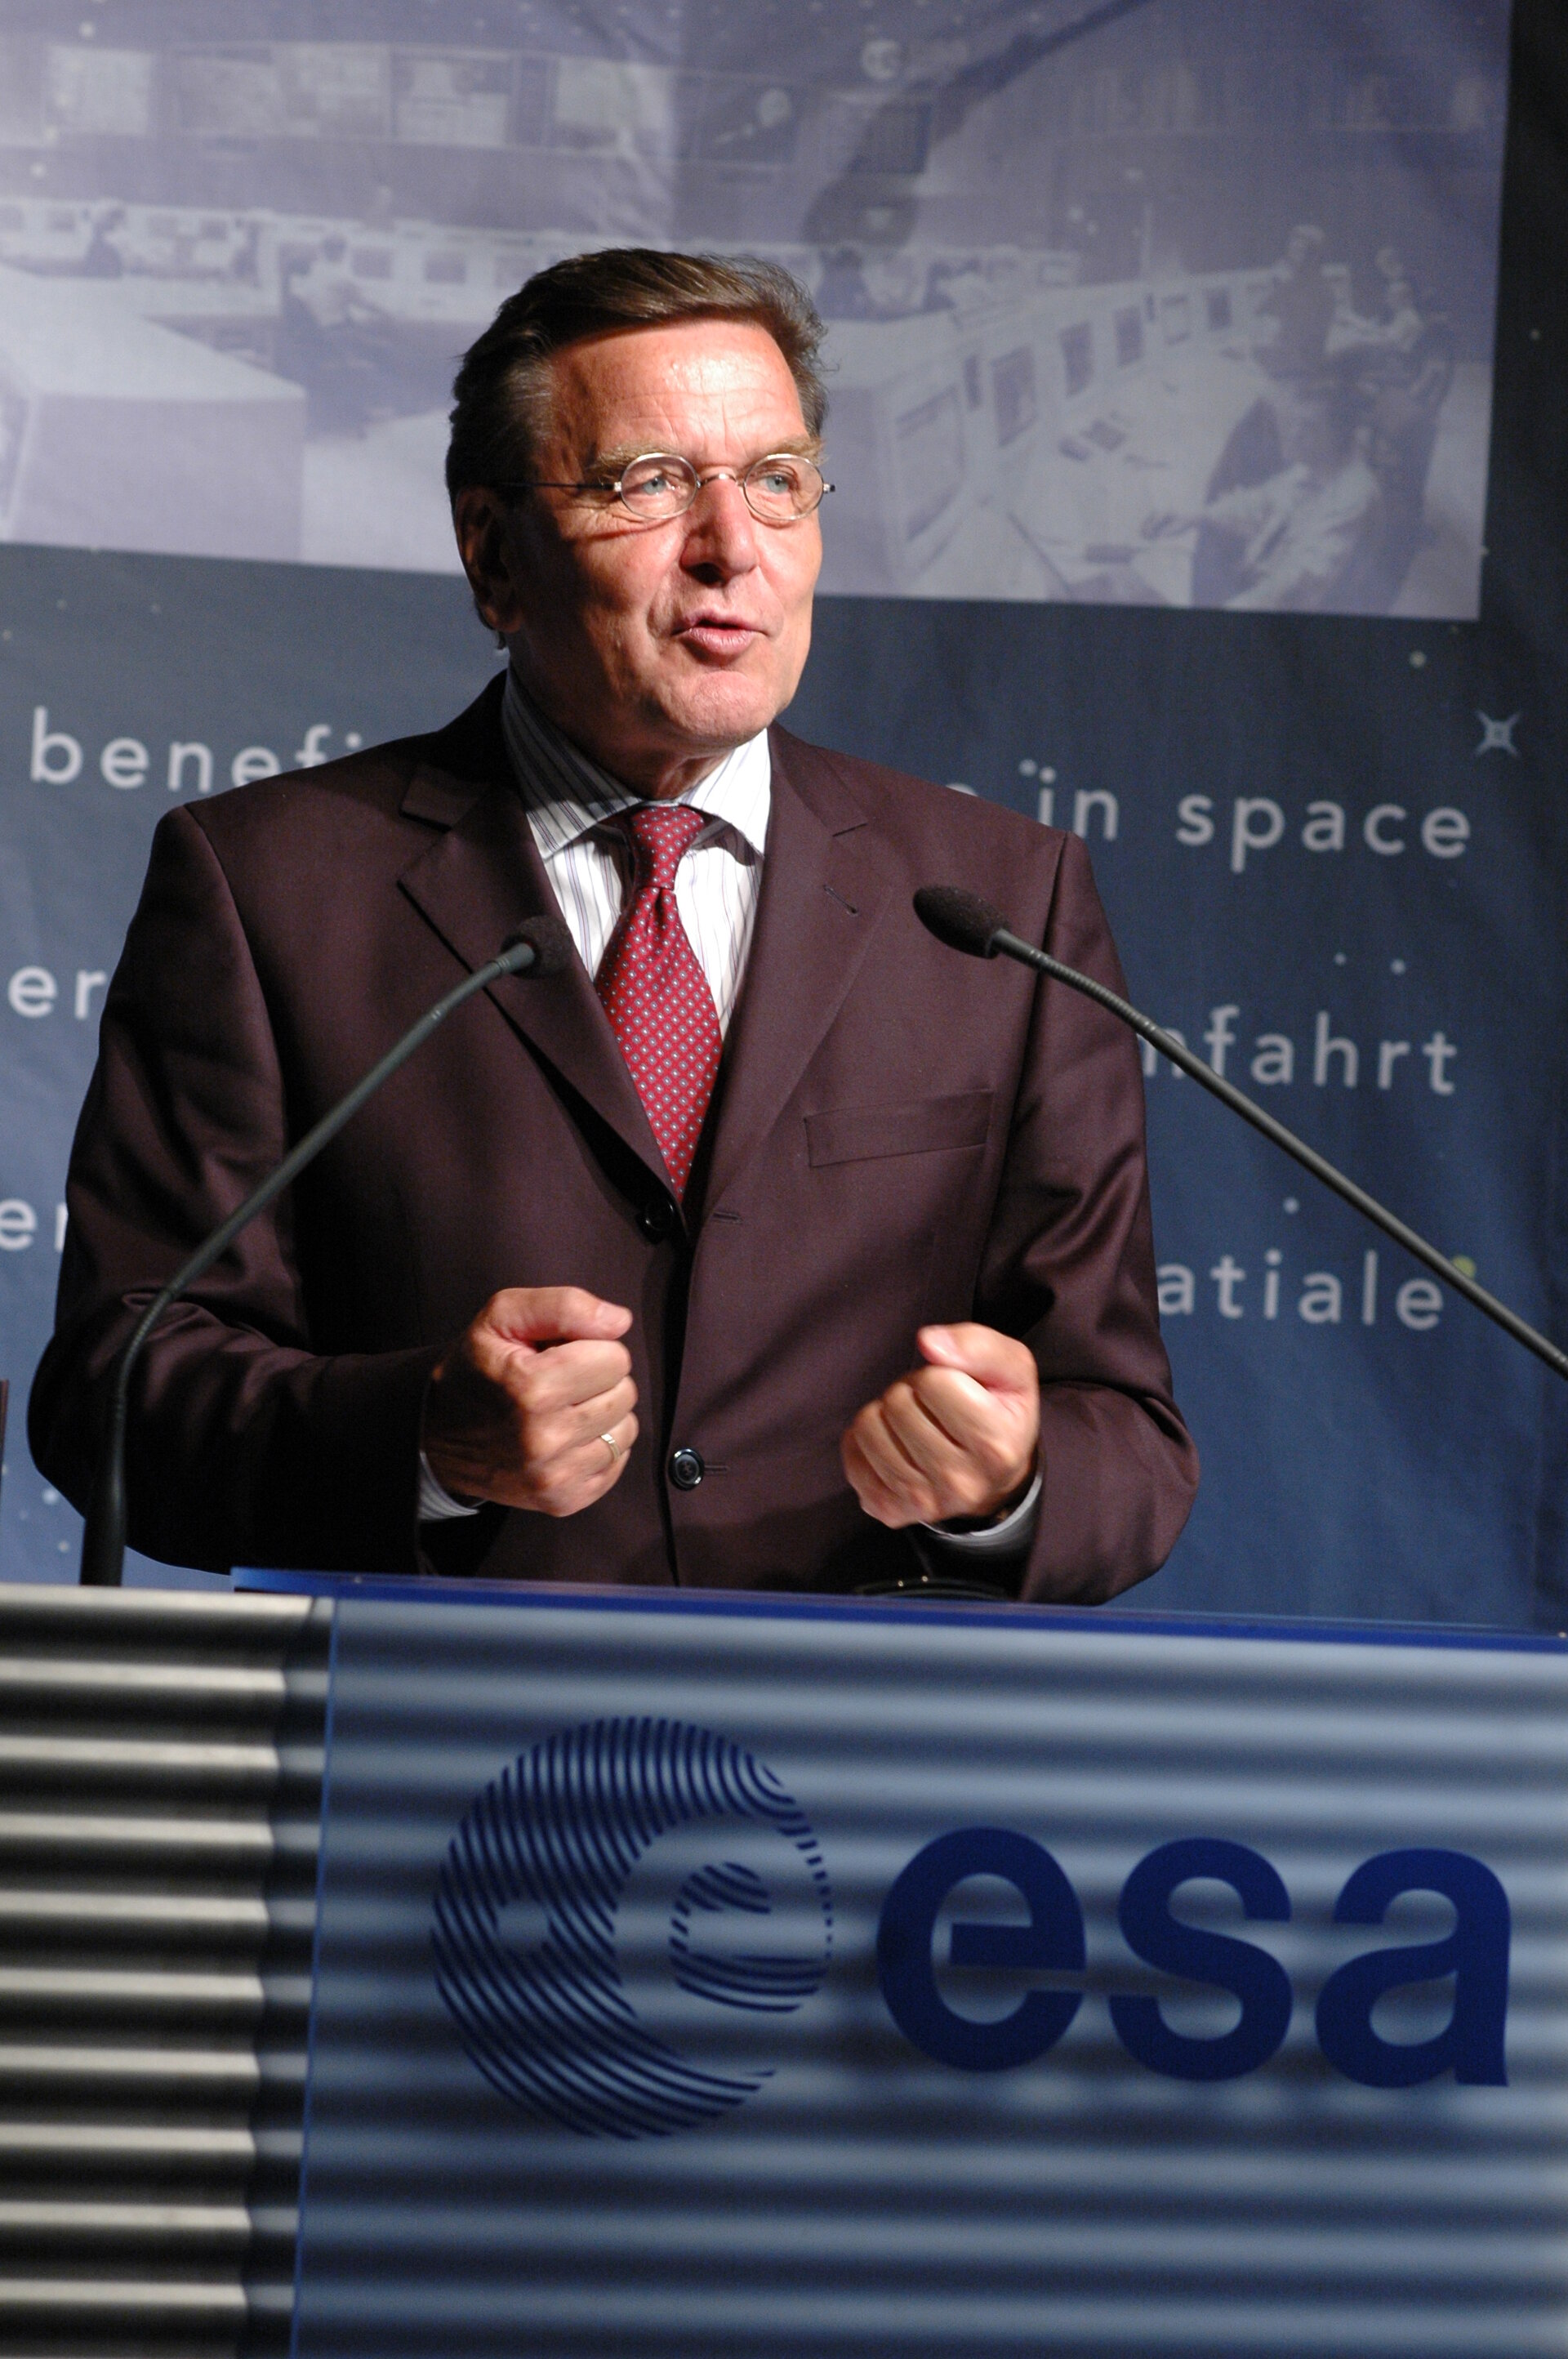 Chancellor Schröder addresses an ESOC audience